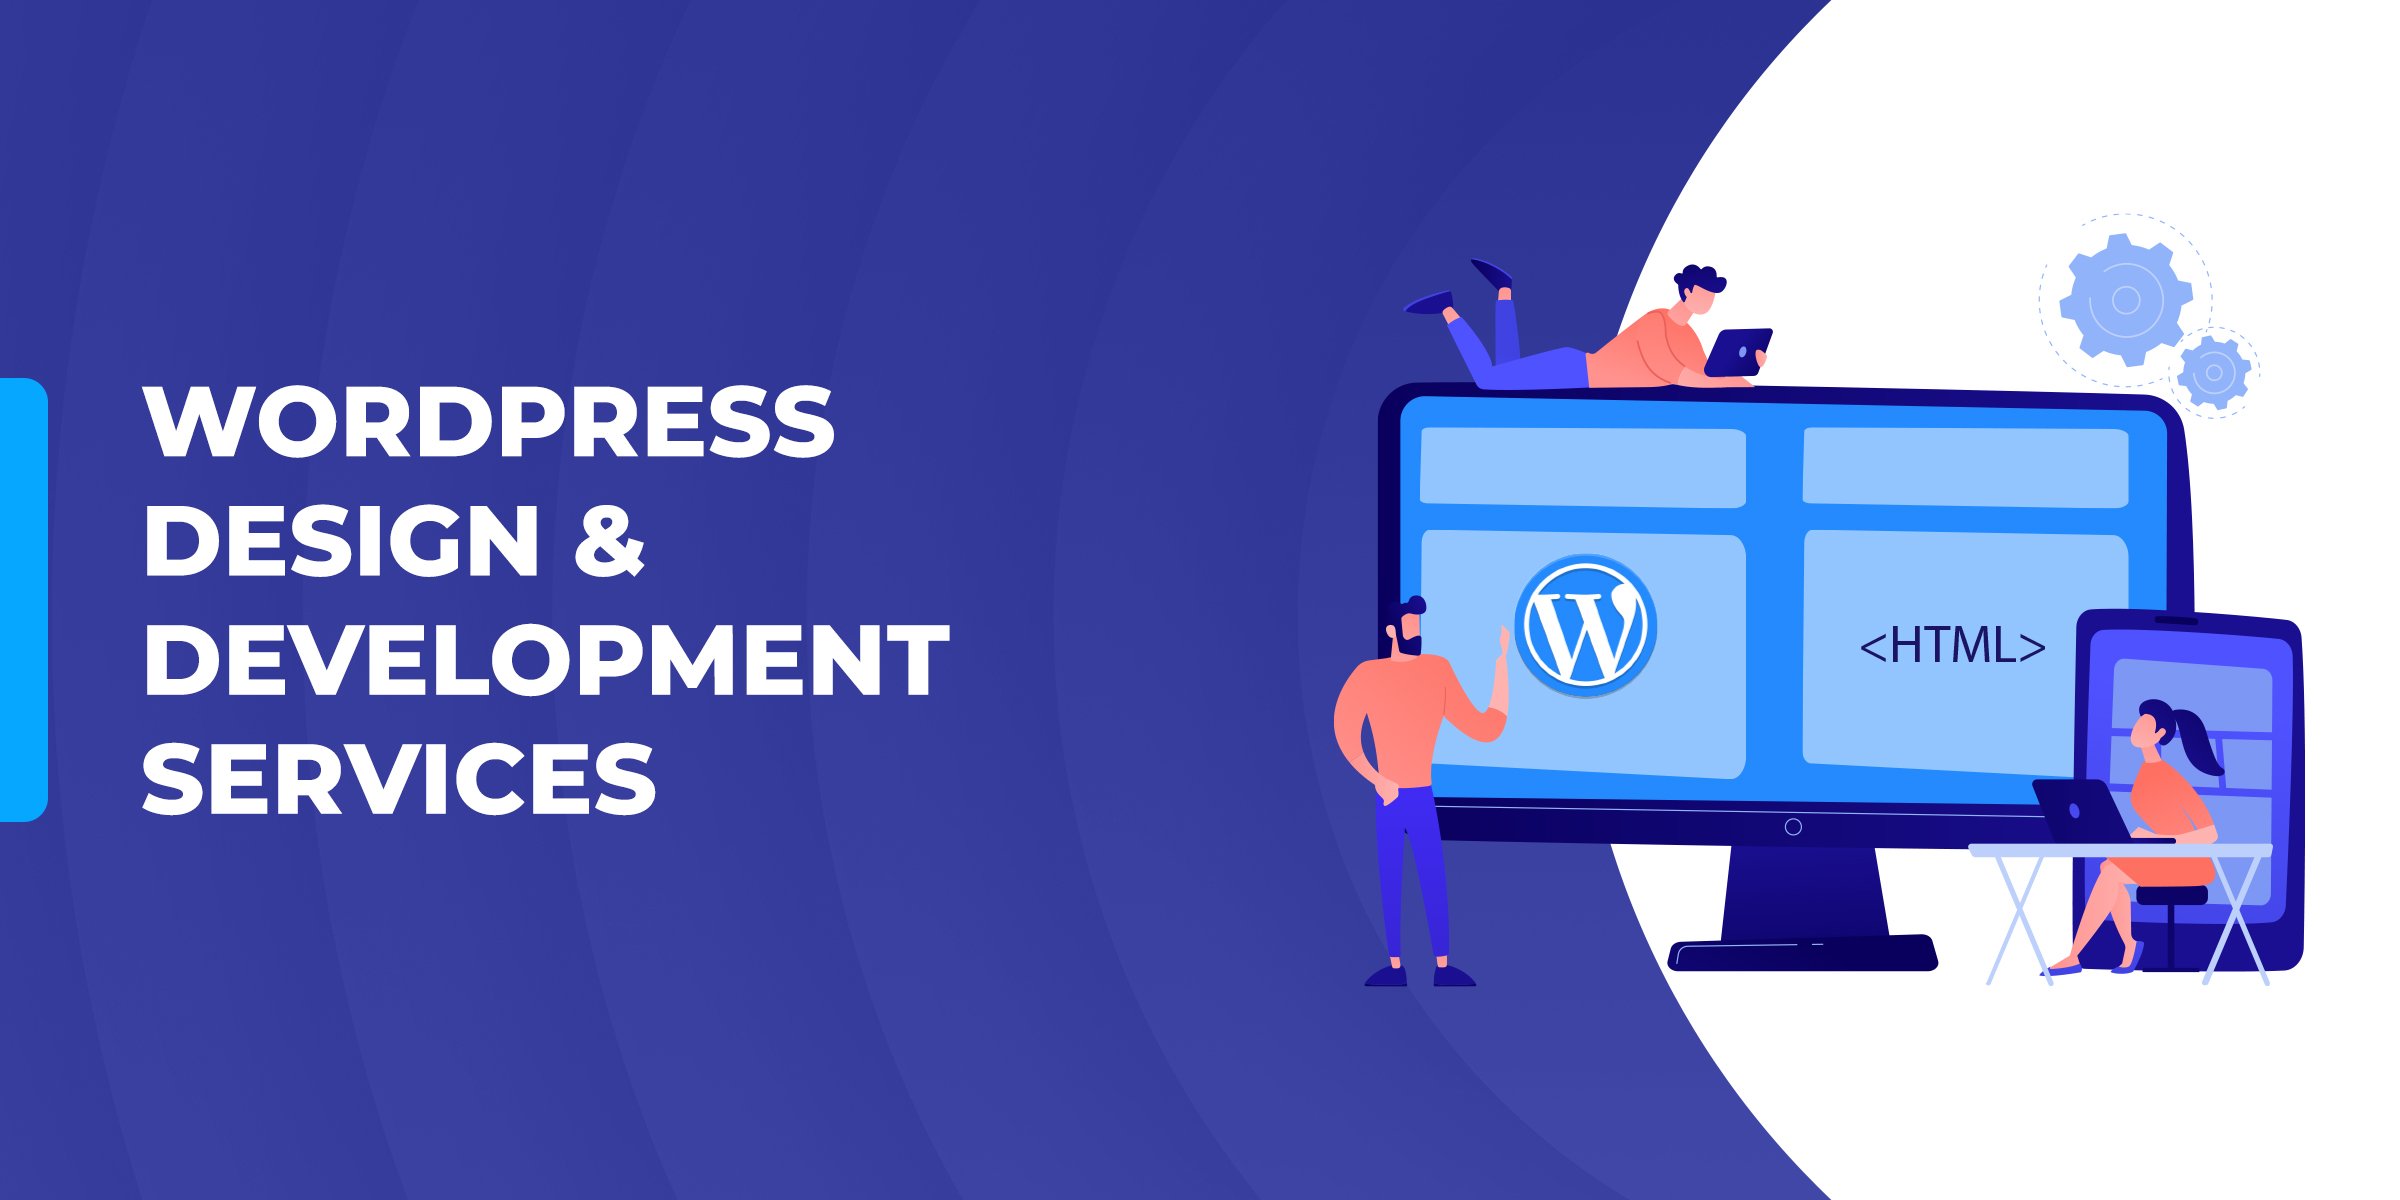 WordPress Design & Development Services